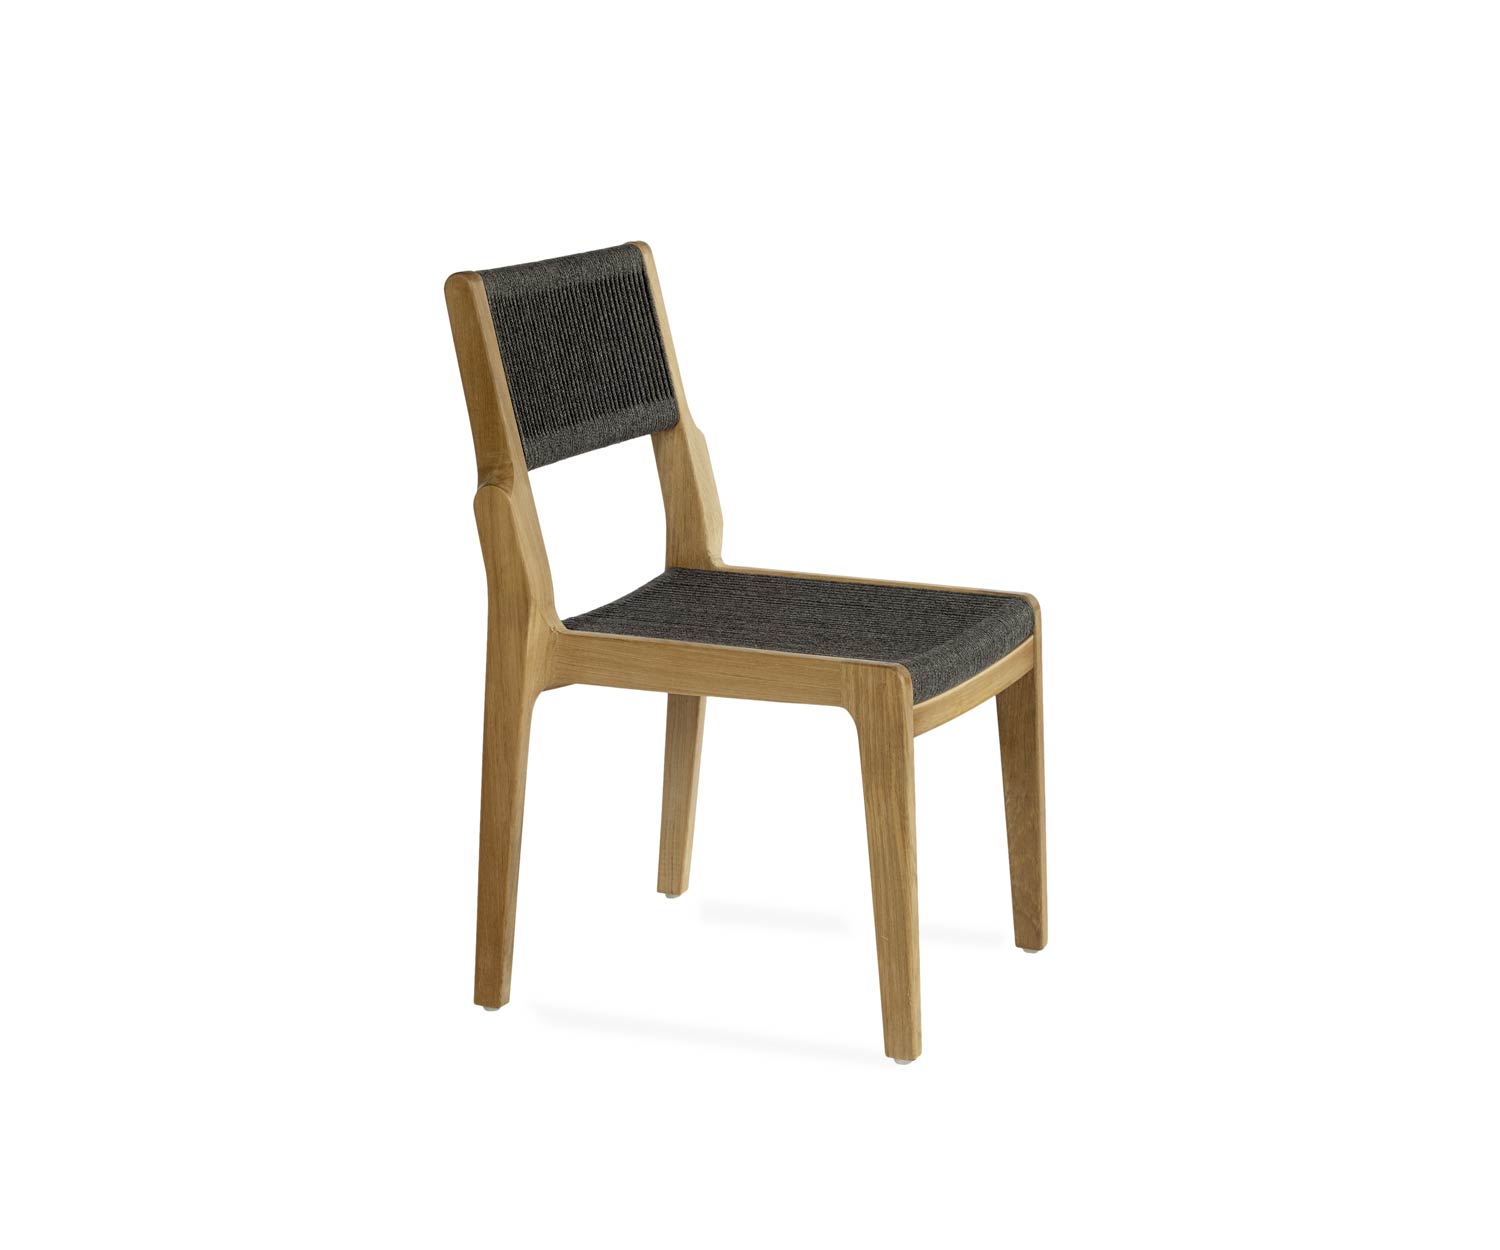 Exklusiver Oasiq Skagen Design Stuhl aus Teak mit handgewobener Seilbespannung